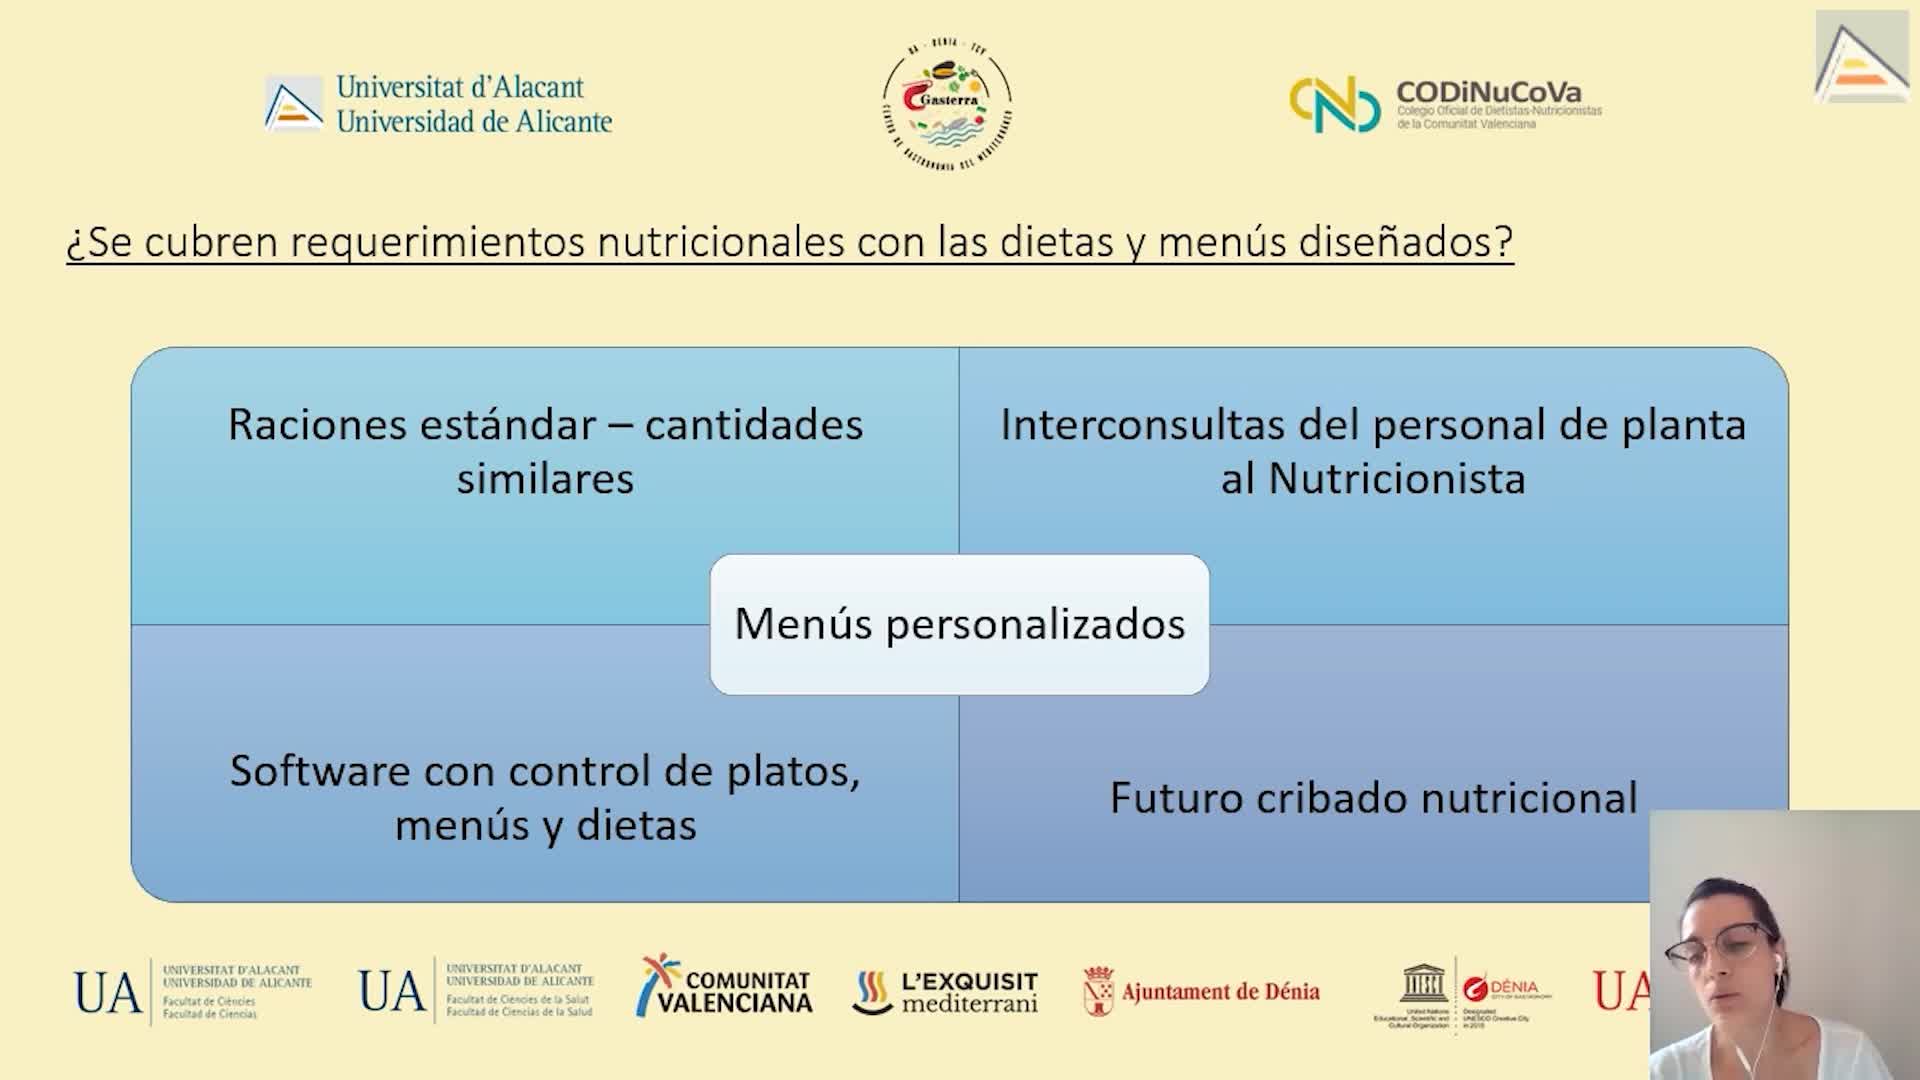 4. EL PAPEL DEL DIETISTA-NUTRICIONISTA EN LA NUTRICION HOSPITALARIA